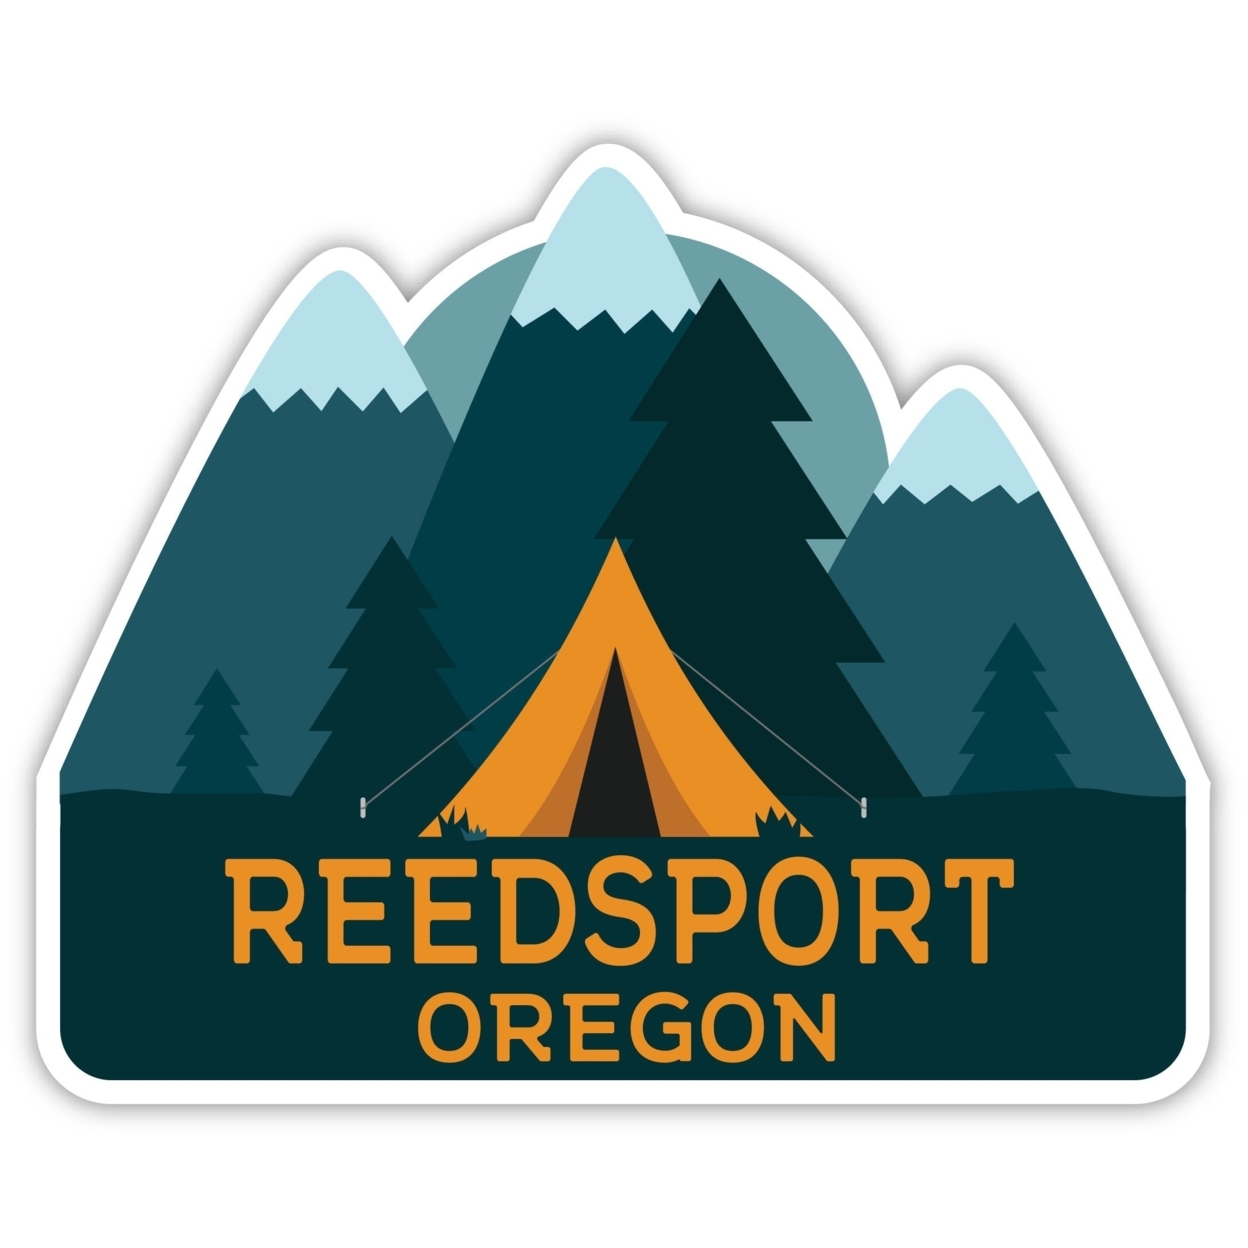 Reedsport Oregon Souvenir Decorative Stickers (Choose Theme And Size) - Single Unit, 2-Inch, Tent